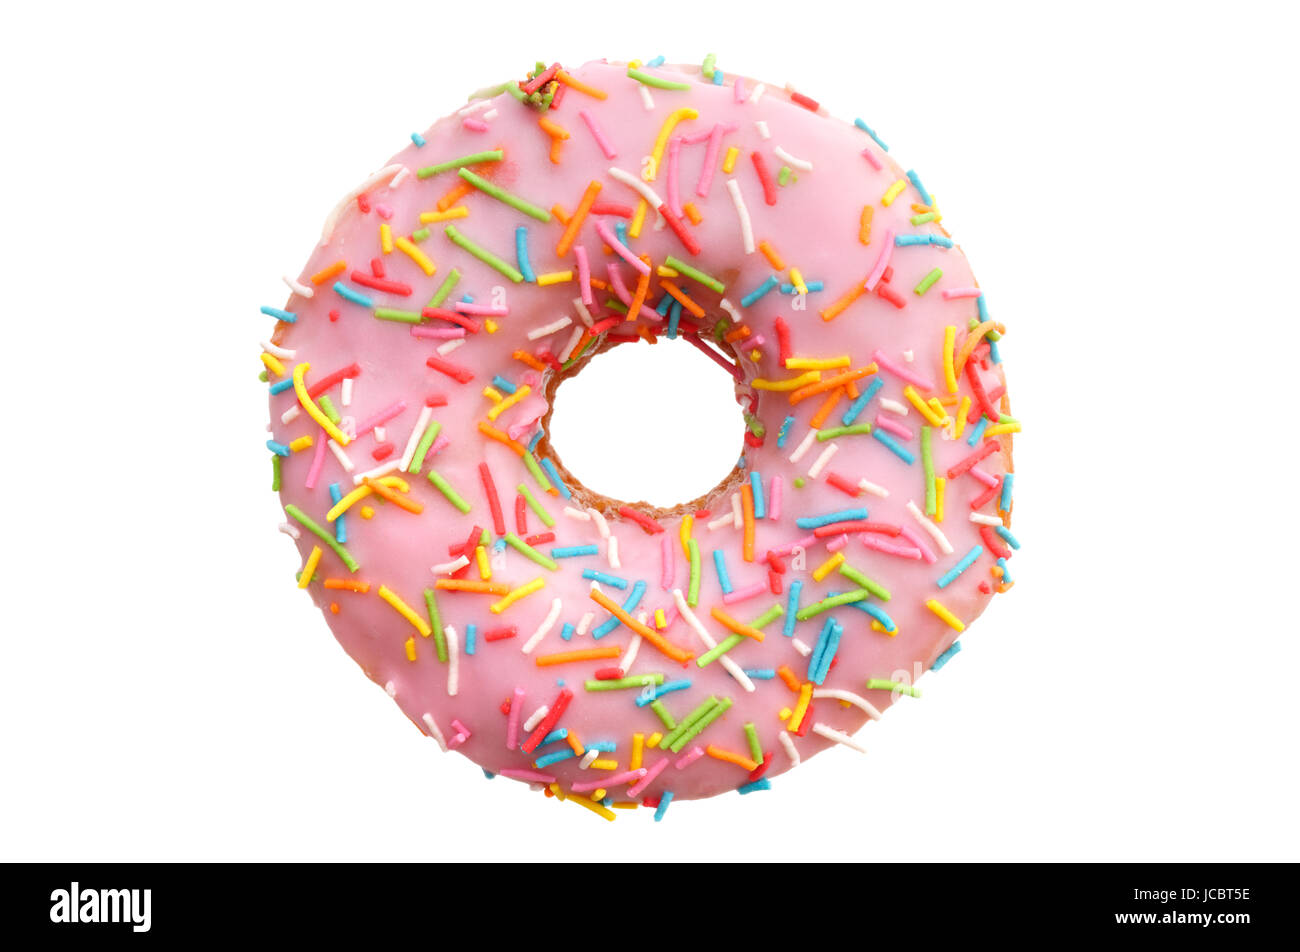 Comida y bebida: Una sola rosa donut, aislado sobre fondo blanco. Foto de stock